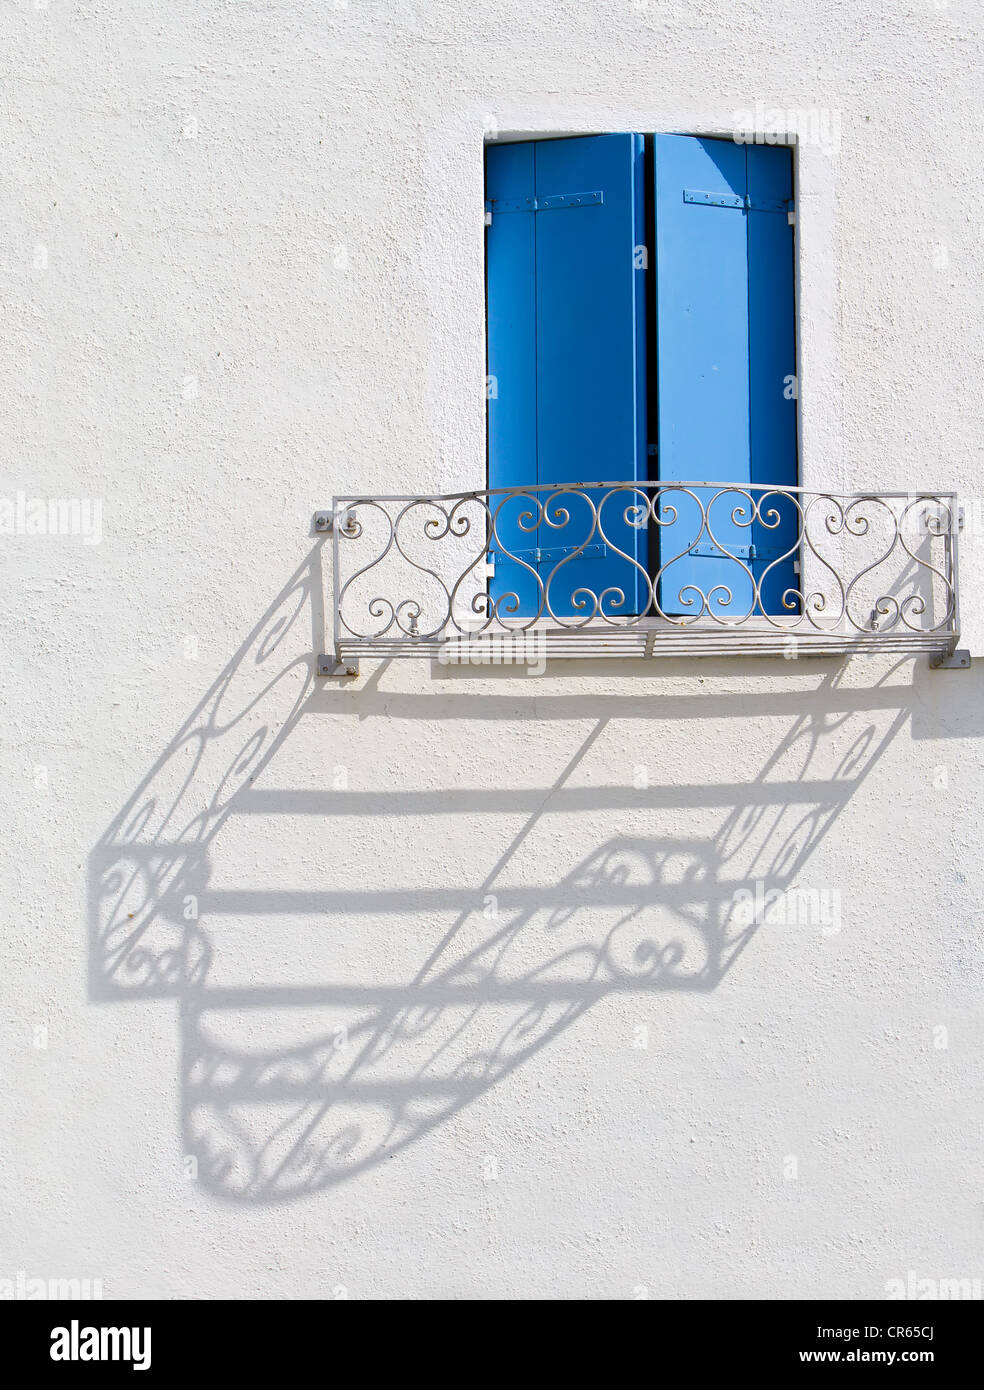 Balcony railing casting a shadow on a wall, Burano, Venice, Italy, Europe Stock Photo